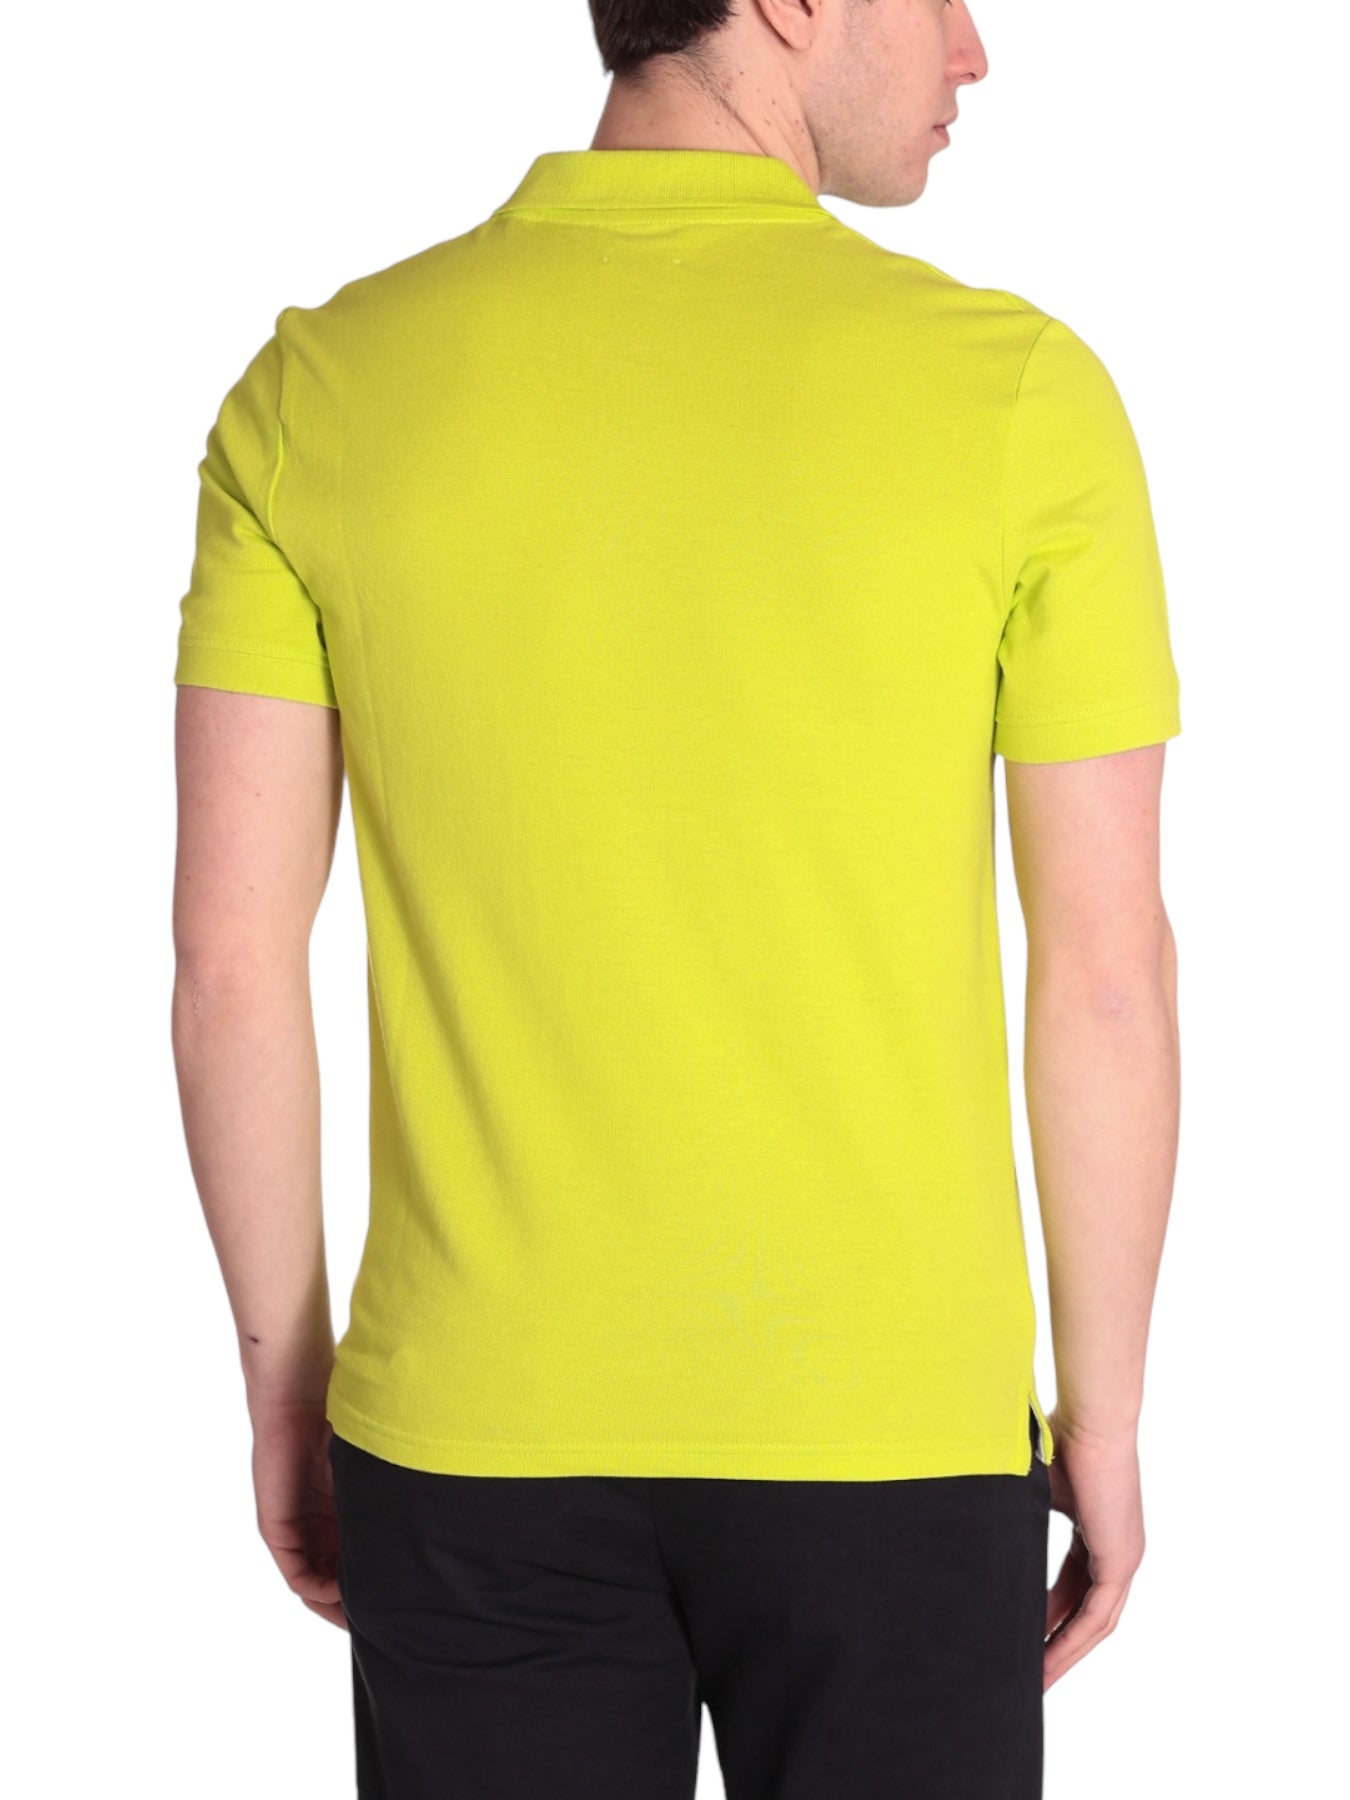 Markup Uomo T-shirt MK11001-LIME Giallo